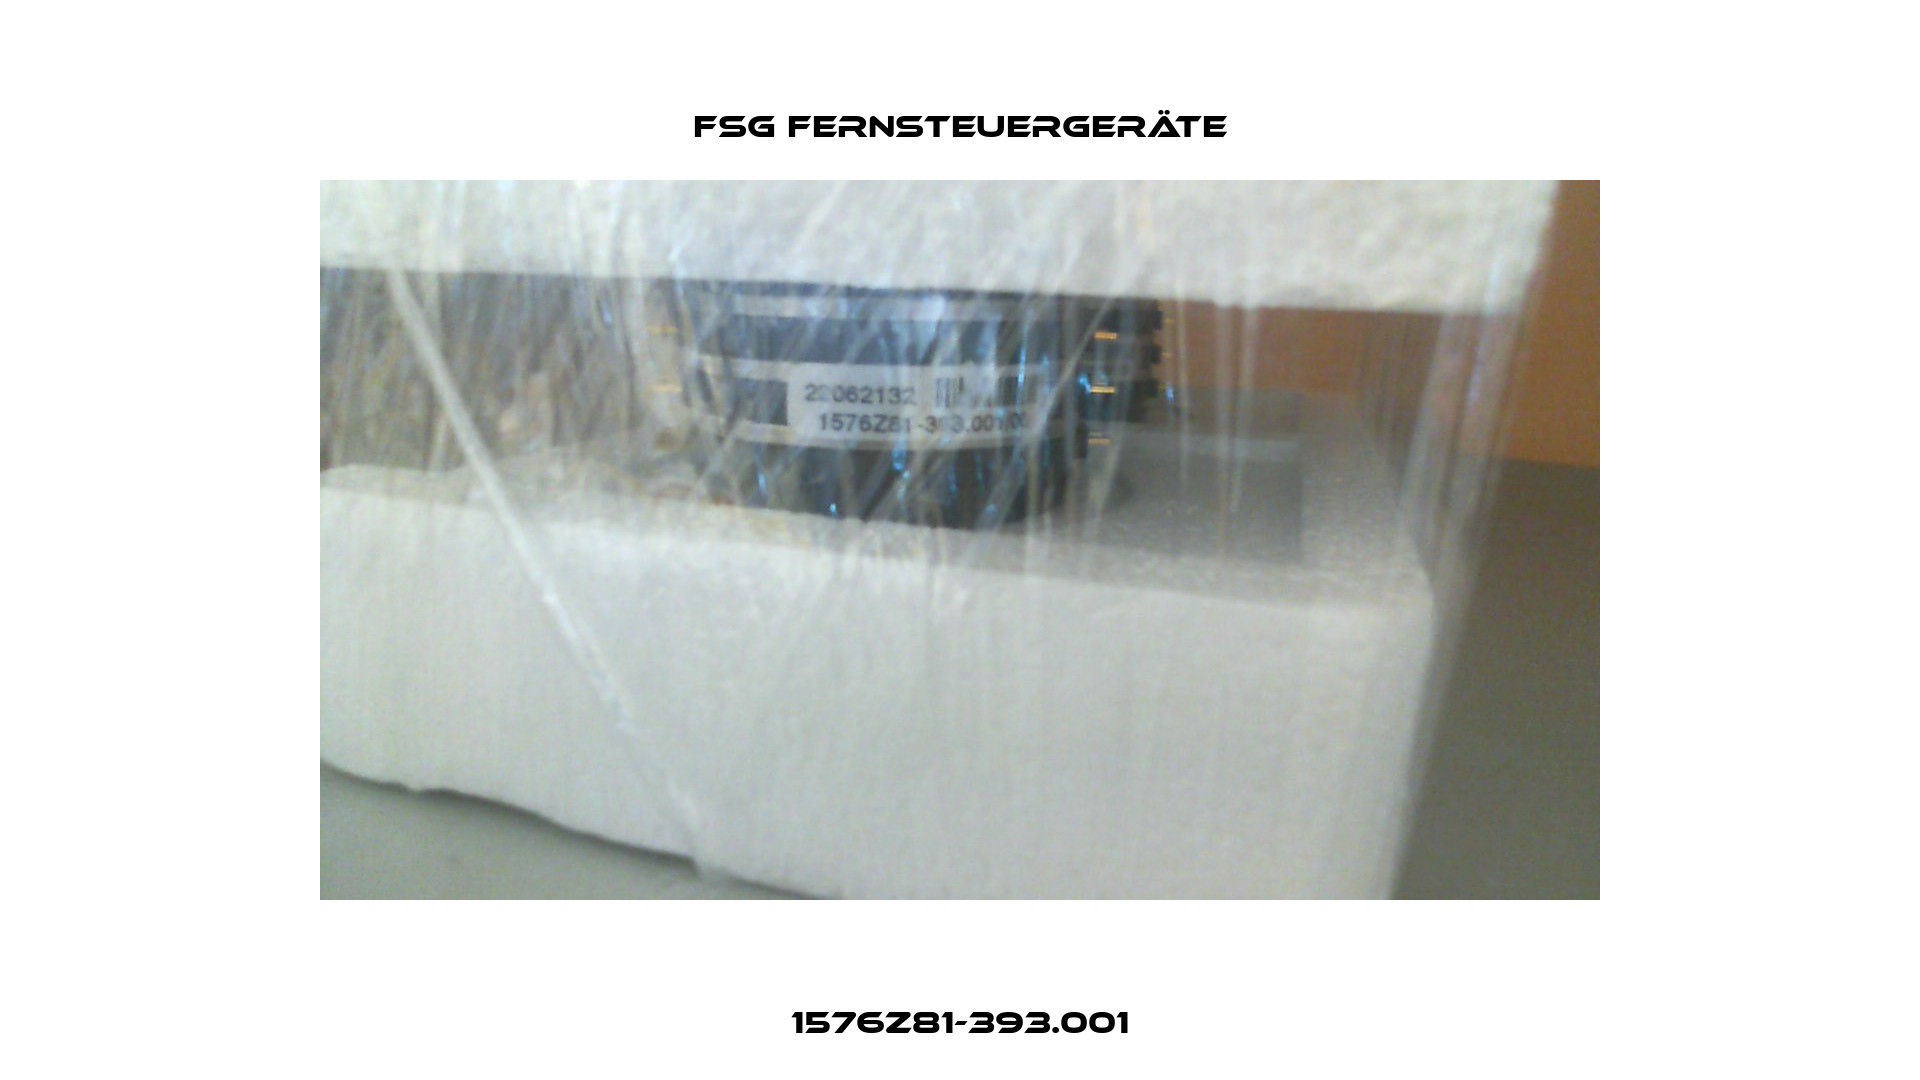 1576Z81-393.001 FSG Fernsteuergeräte